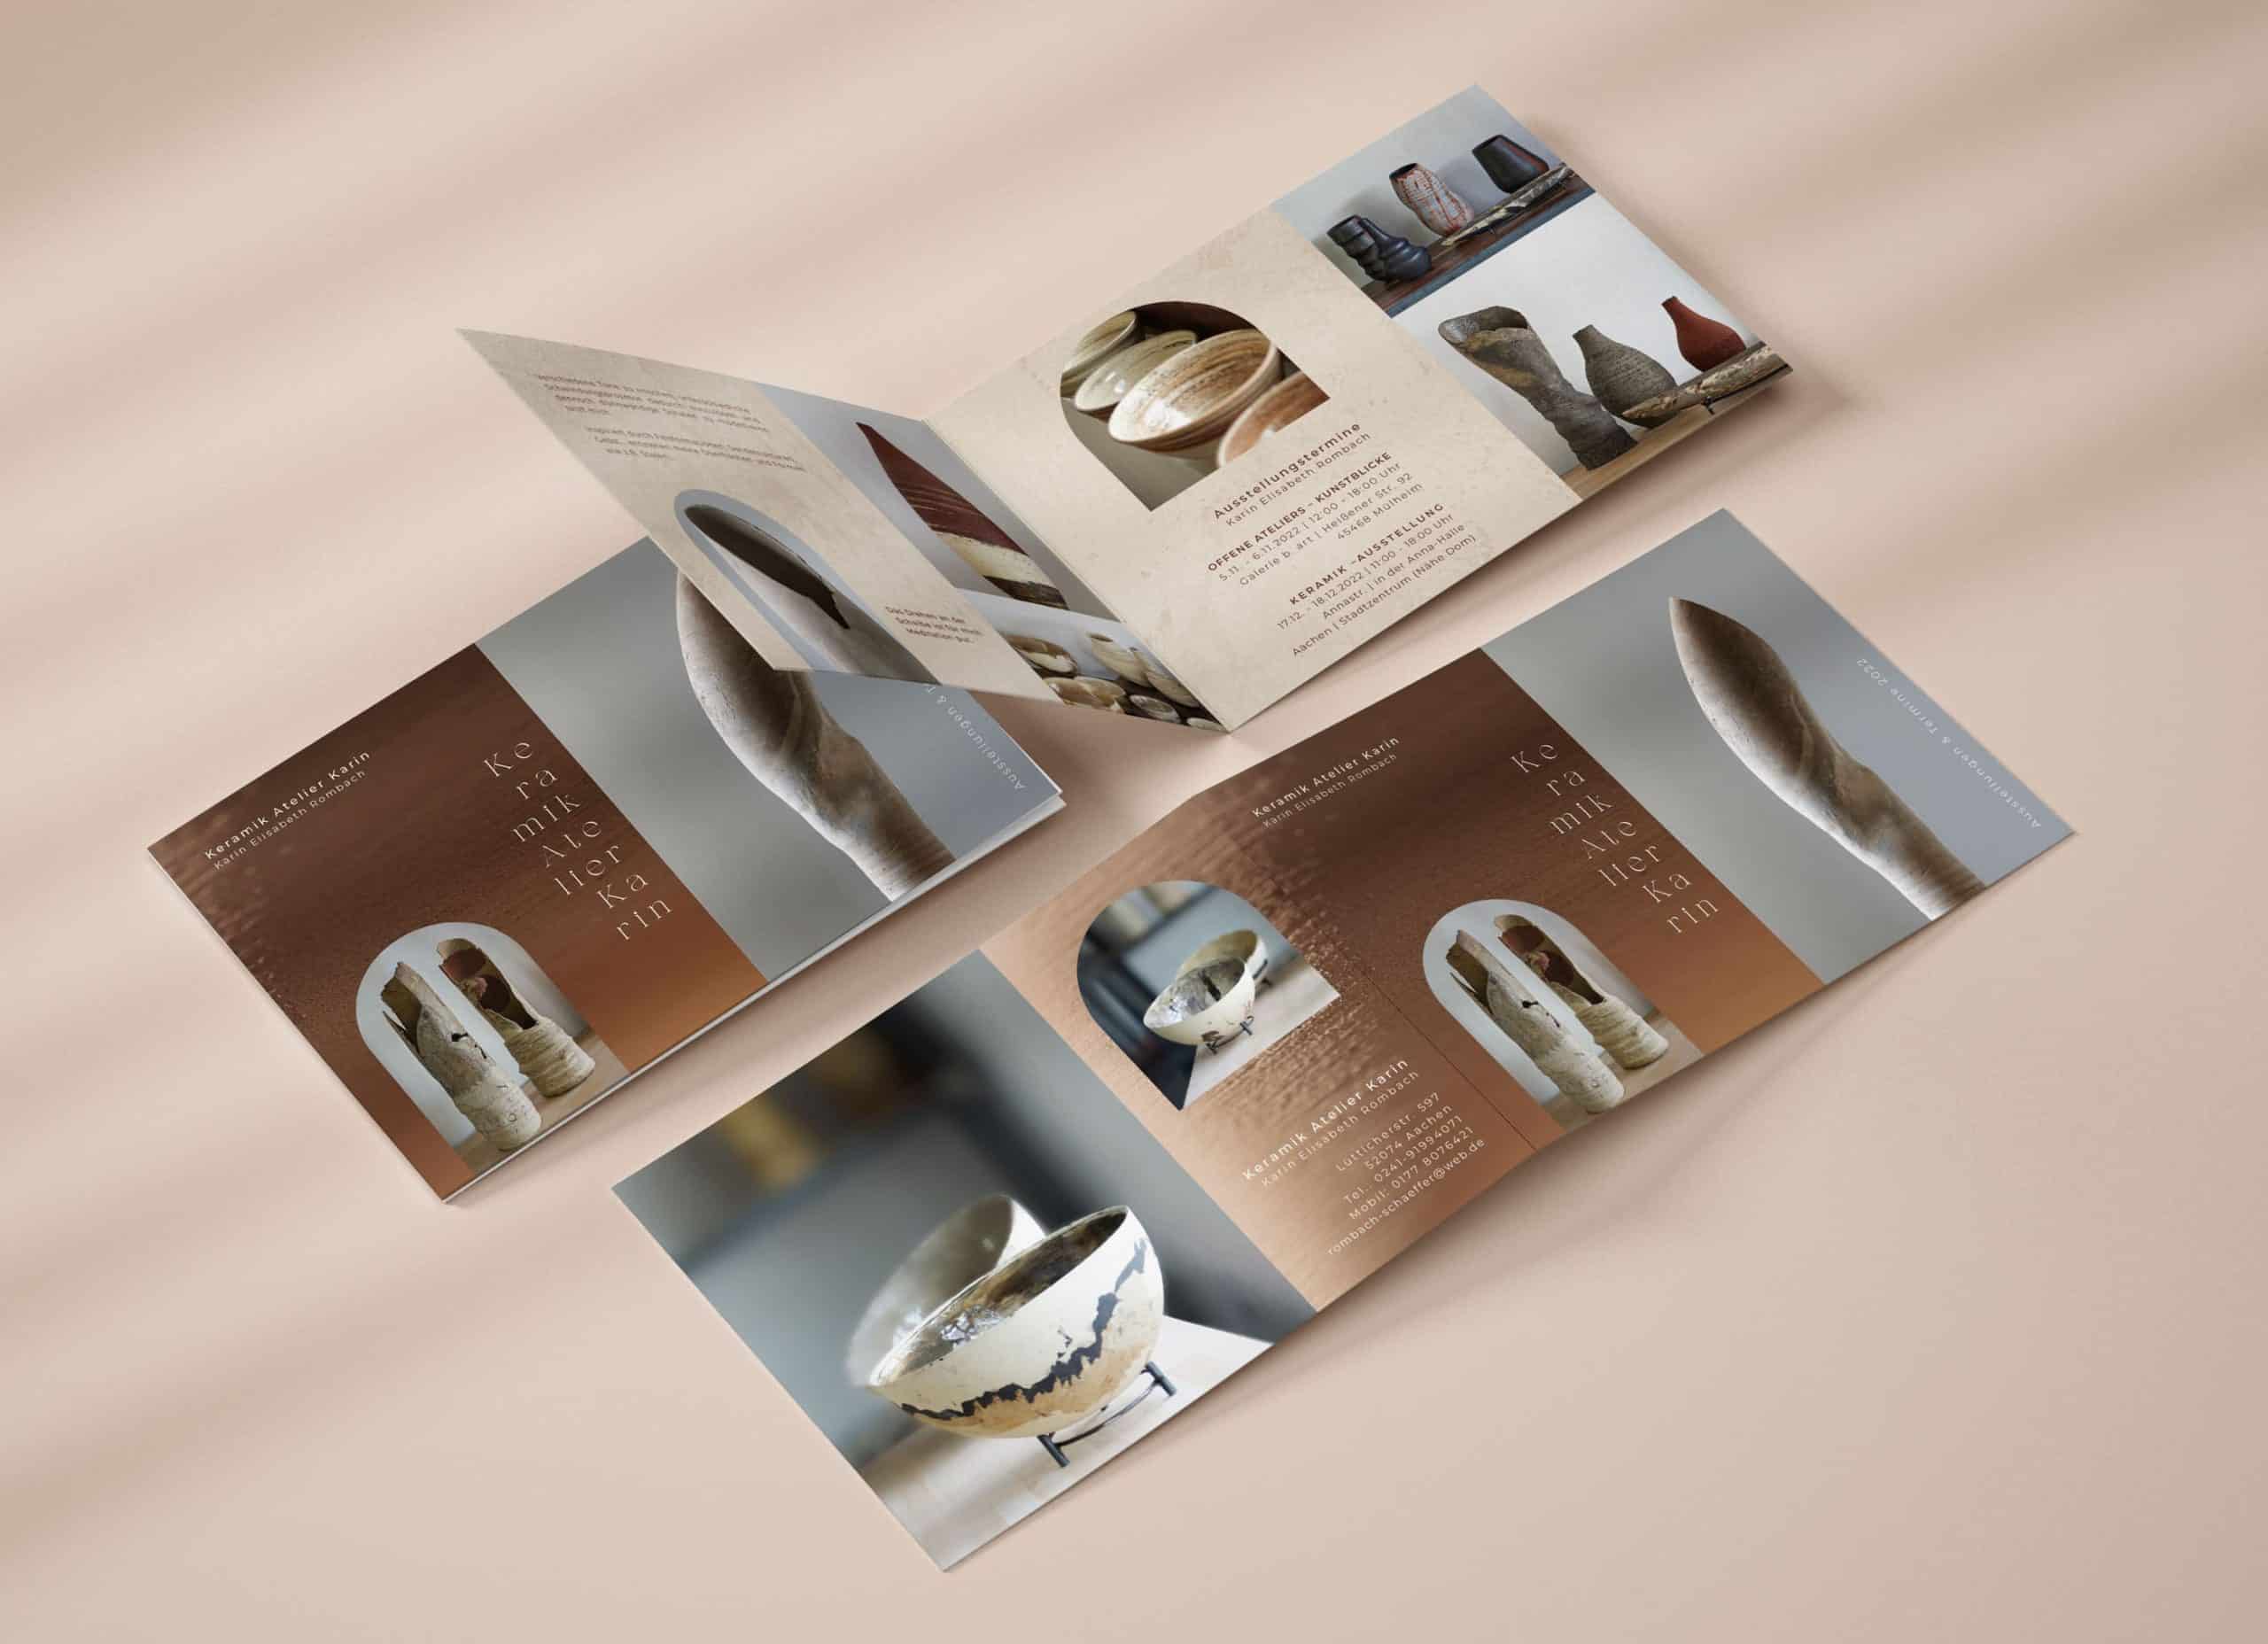 faltblatt-broschuere-flyer-design-gestaltung-Printdesign-printmedium-visual-design-corporate-dsign-grafikdesign-kommunikationsdesign-lara-kosdesign